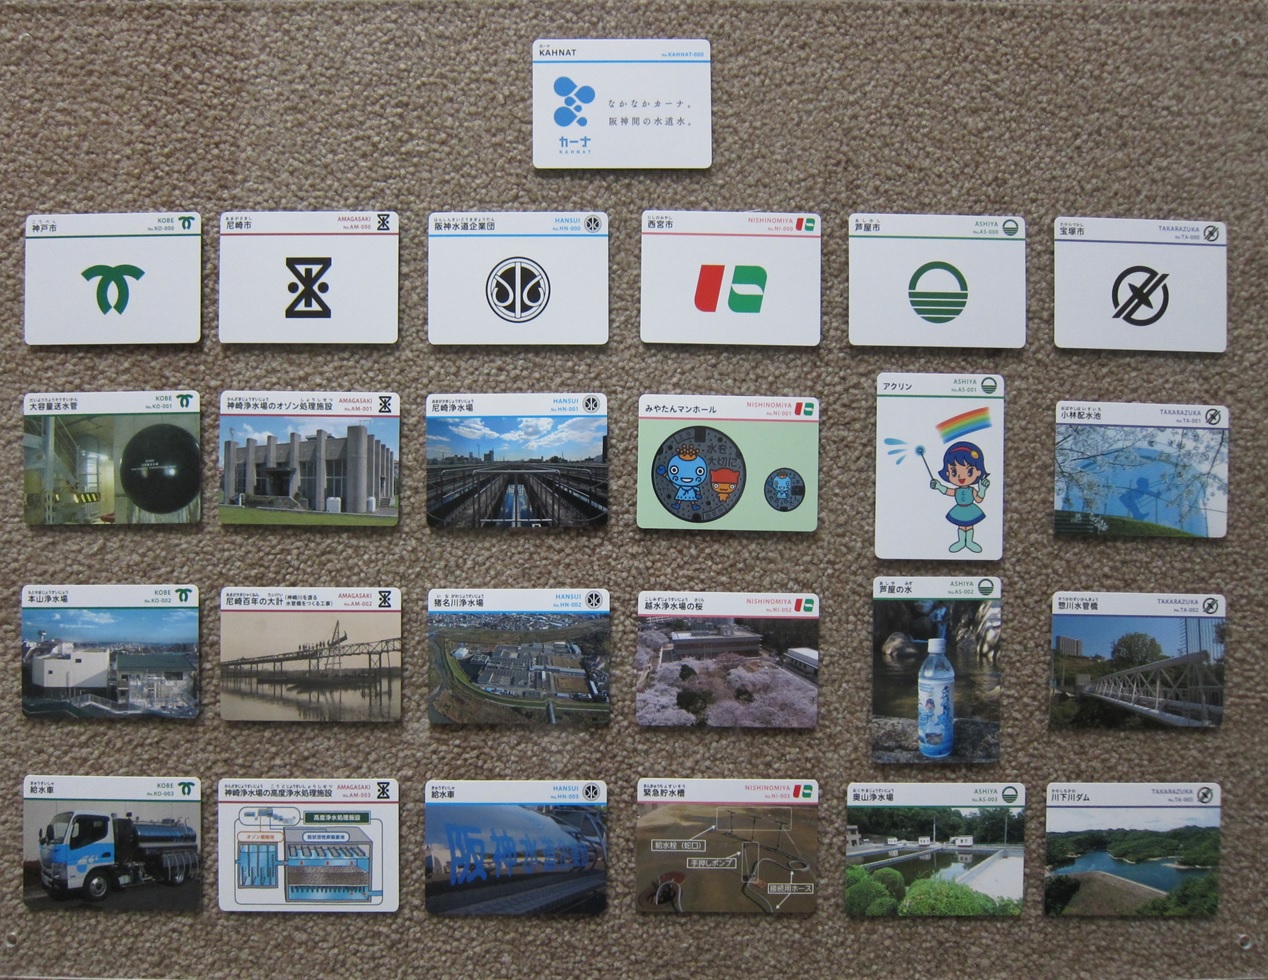 KAHNATカード全25種類の写真、ピュアリンや神戸市市章、神戸の風景、ゴミ収集車などがある